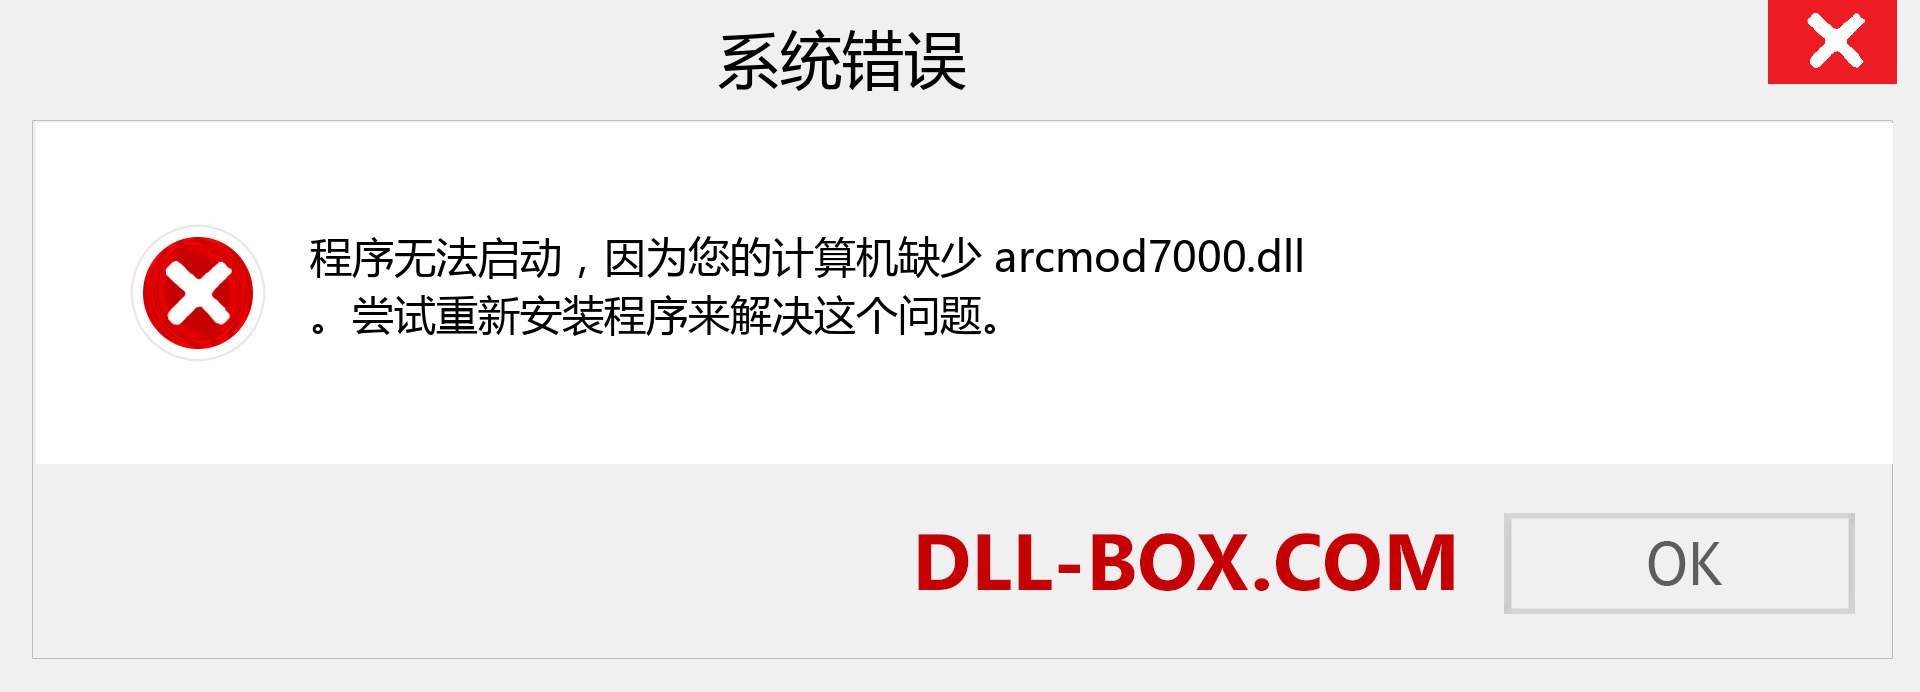 arcmod7000.dll 文件丢失？。 适用于 Windows 7、8、10 的下载 - 修复 Windows、照片、图像上的 arcmod7000 dll 丢失错误